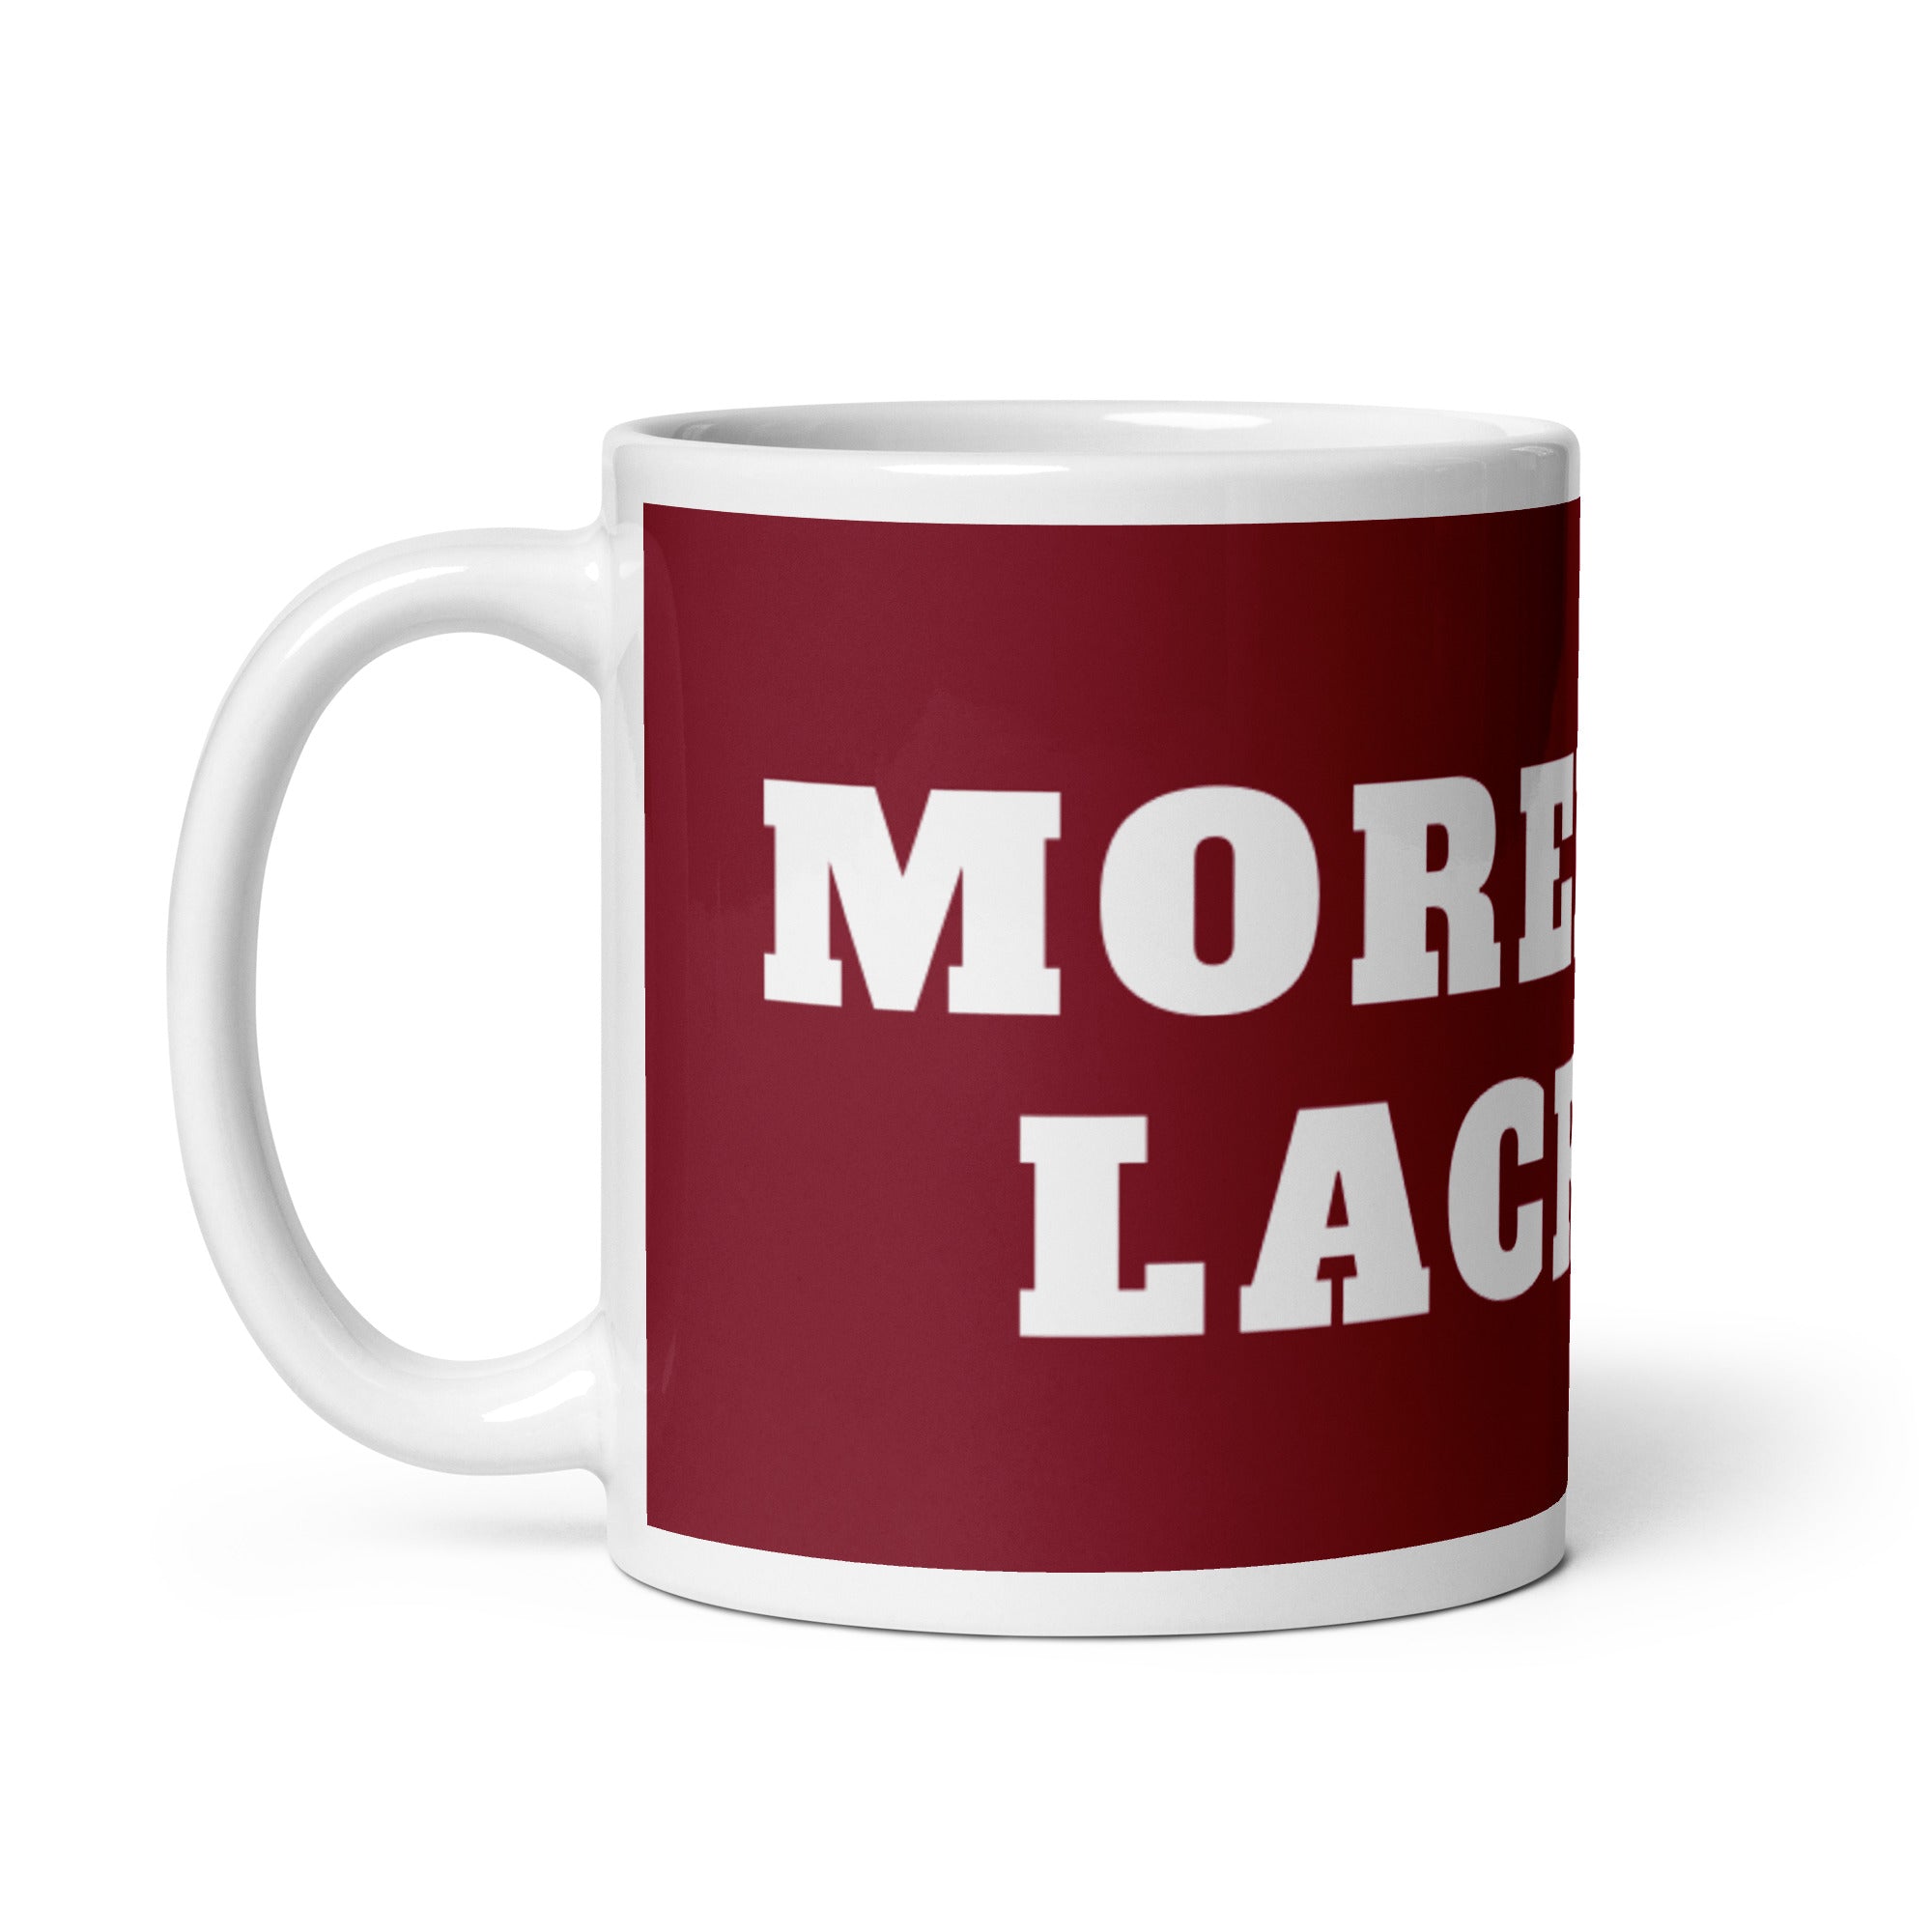 ML White glossy mug